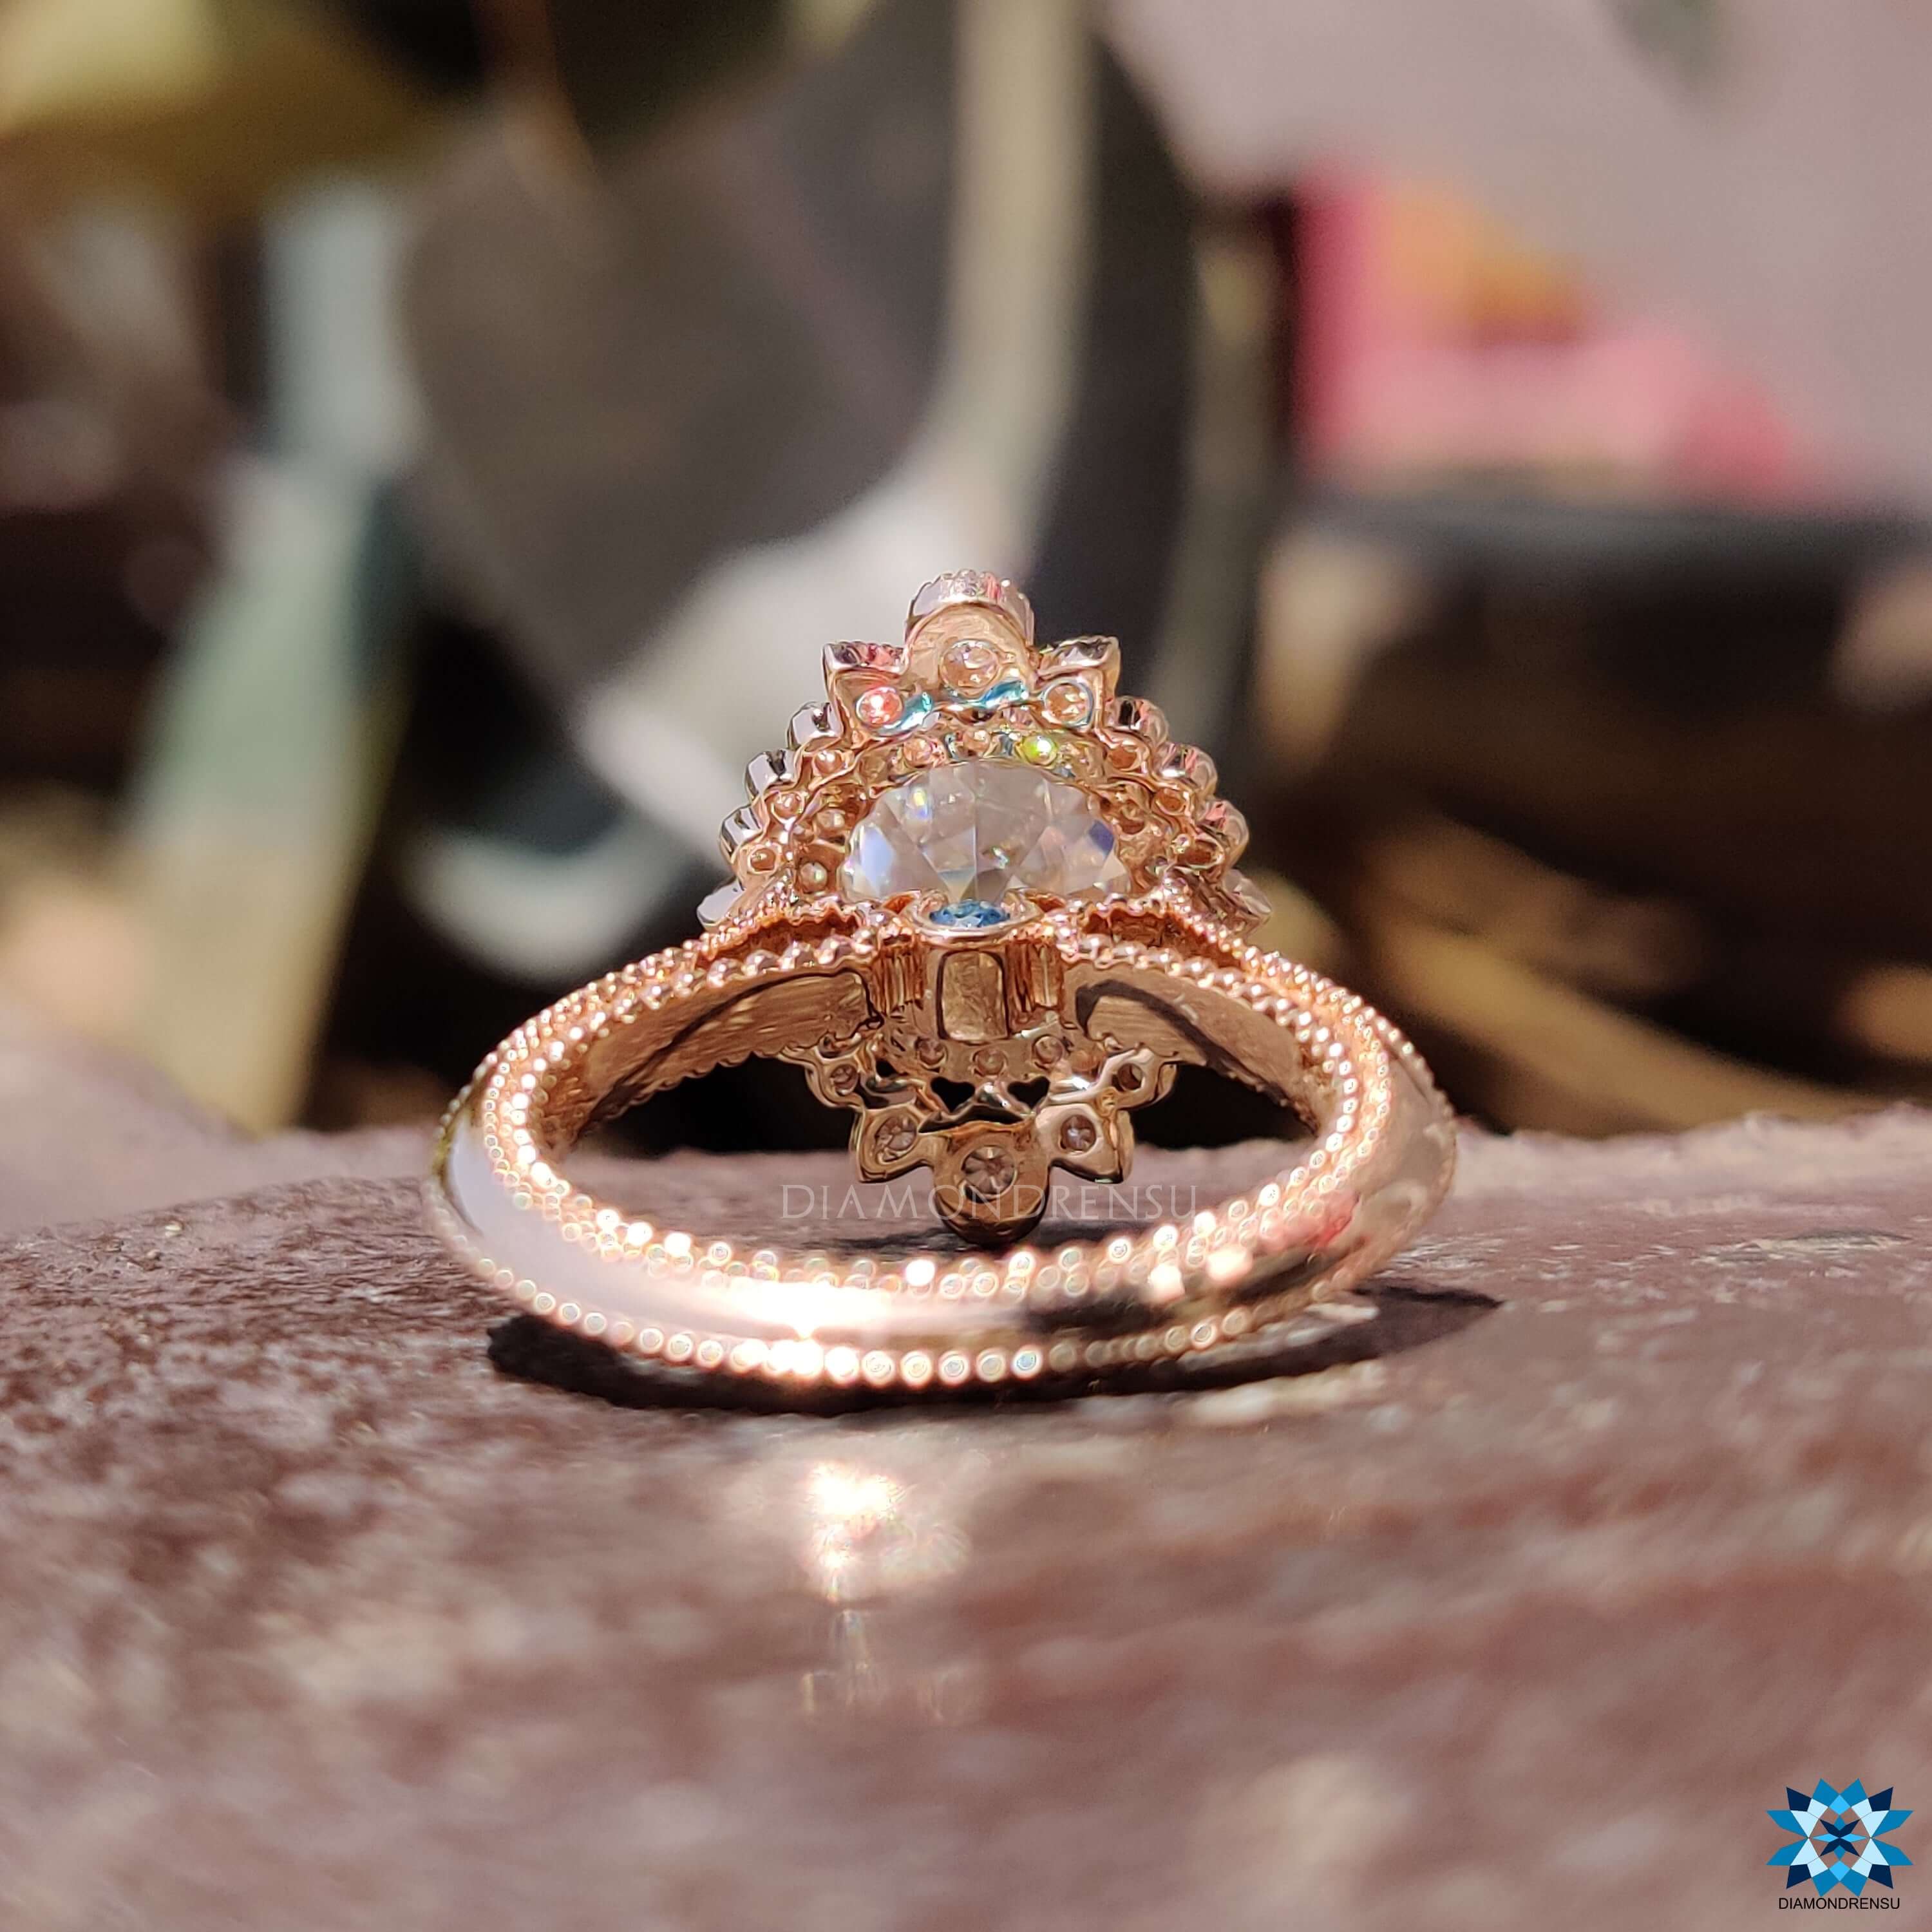 antique engagement ring - diamondrensu